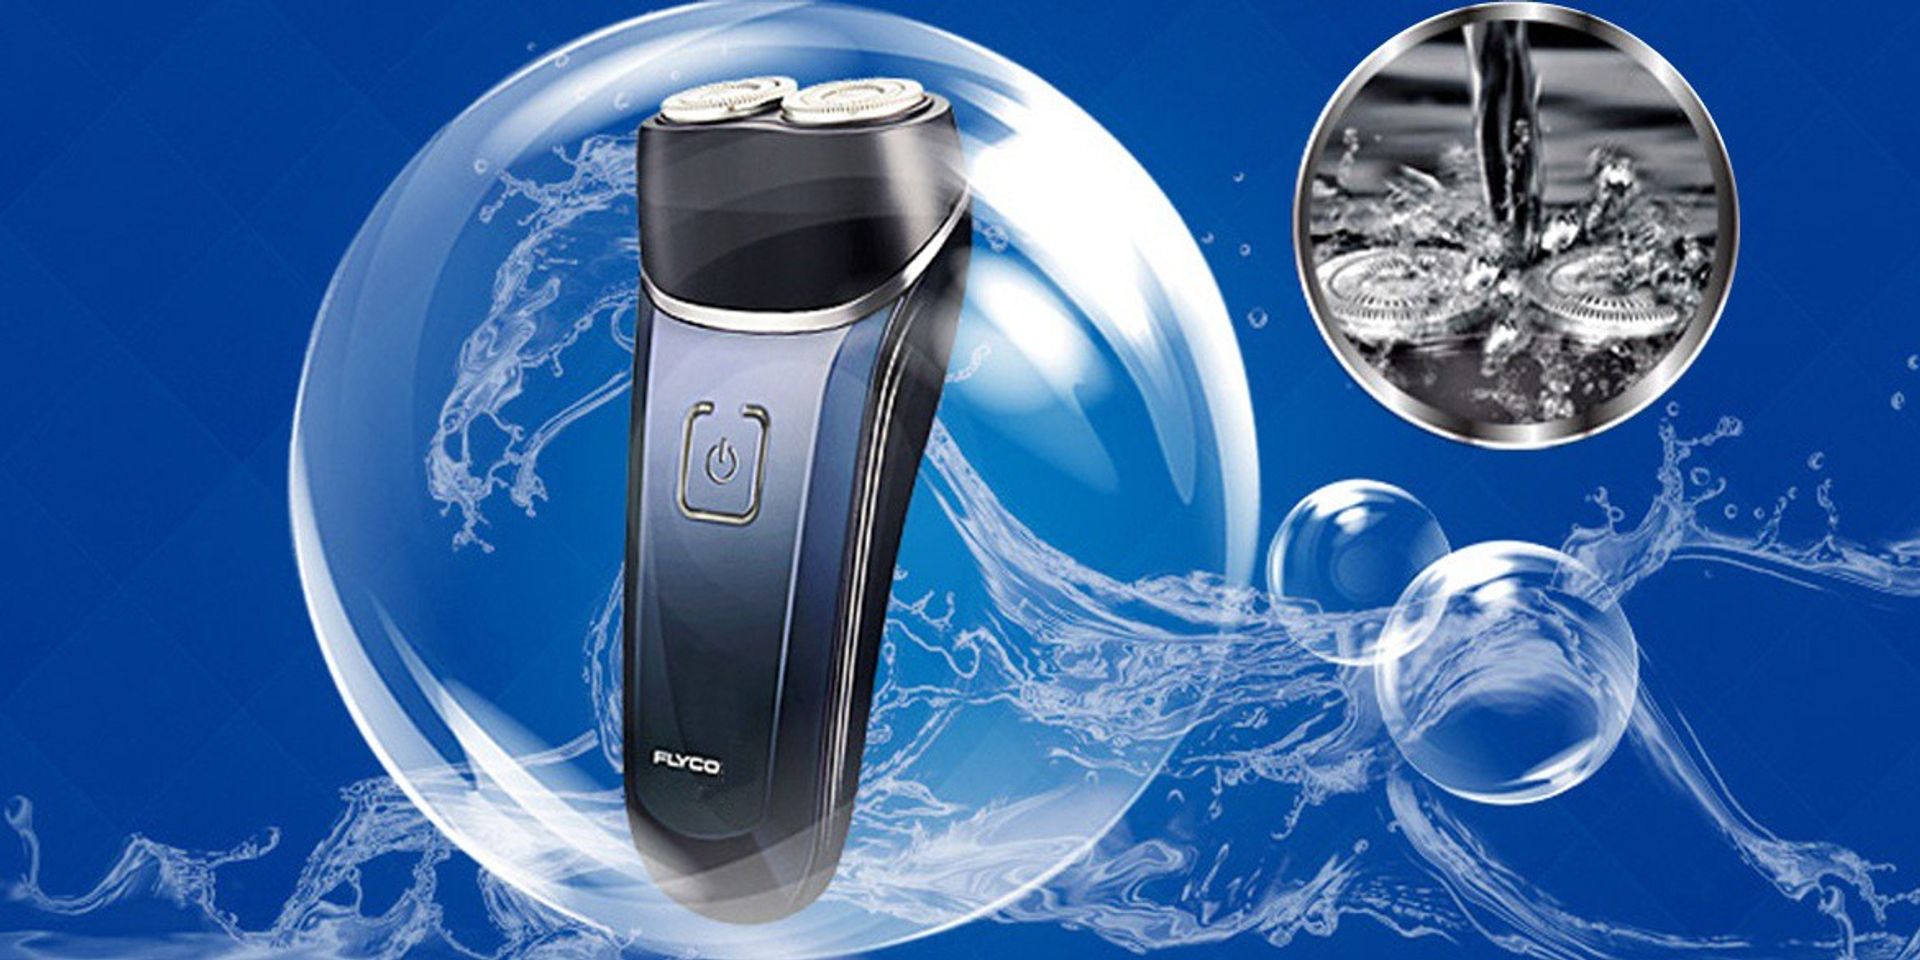 Thân máy được thiết kế chống nước giúp bạn thoải mái khi sử dụng